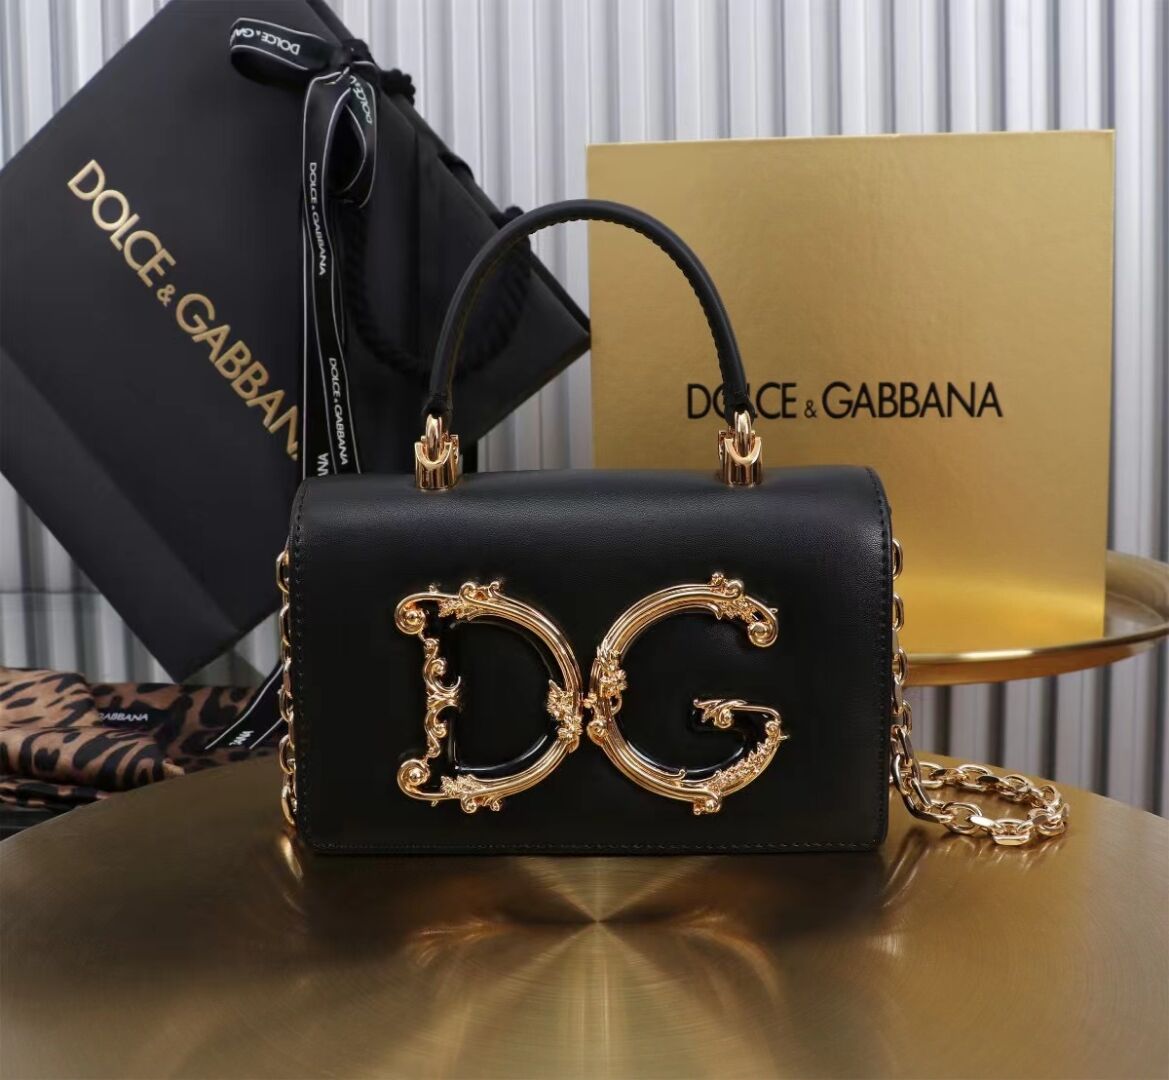 Dolce & Gabbana leather Shoulder Bag G6504 black